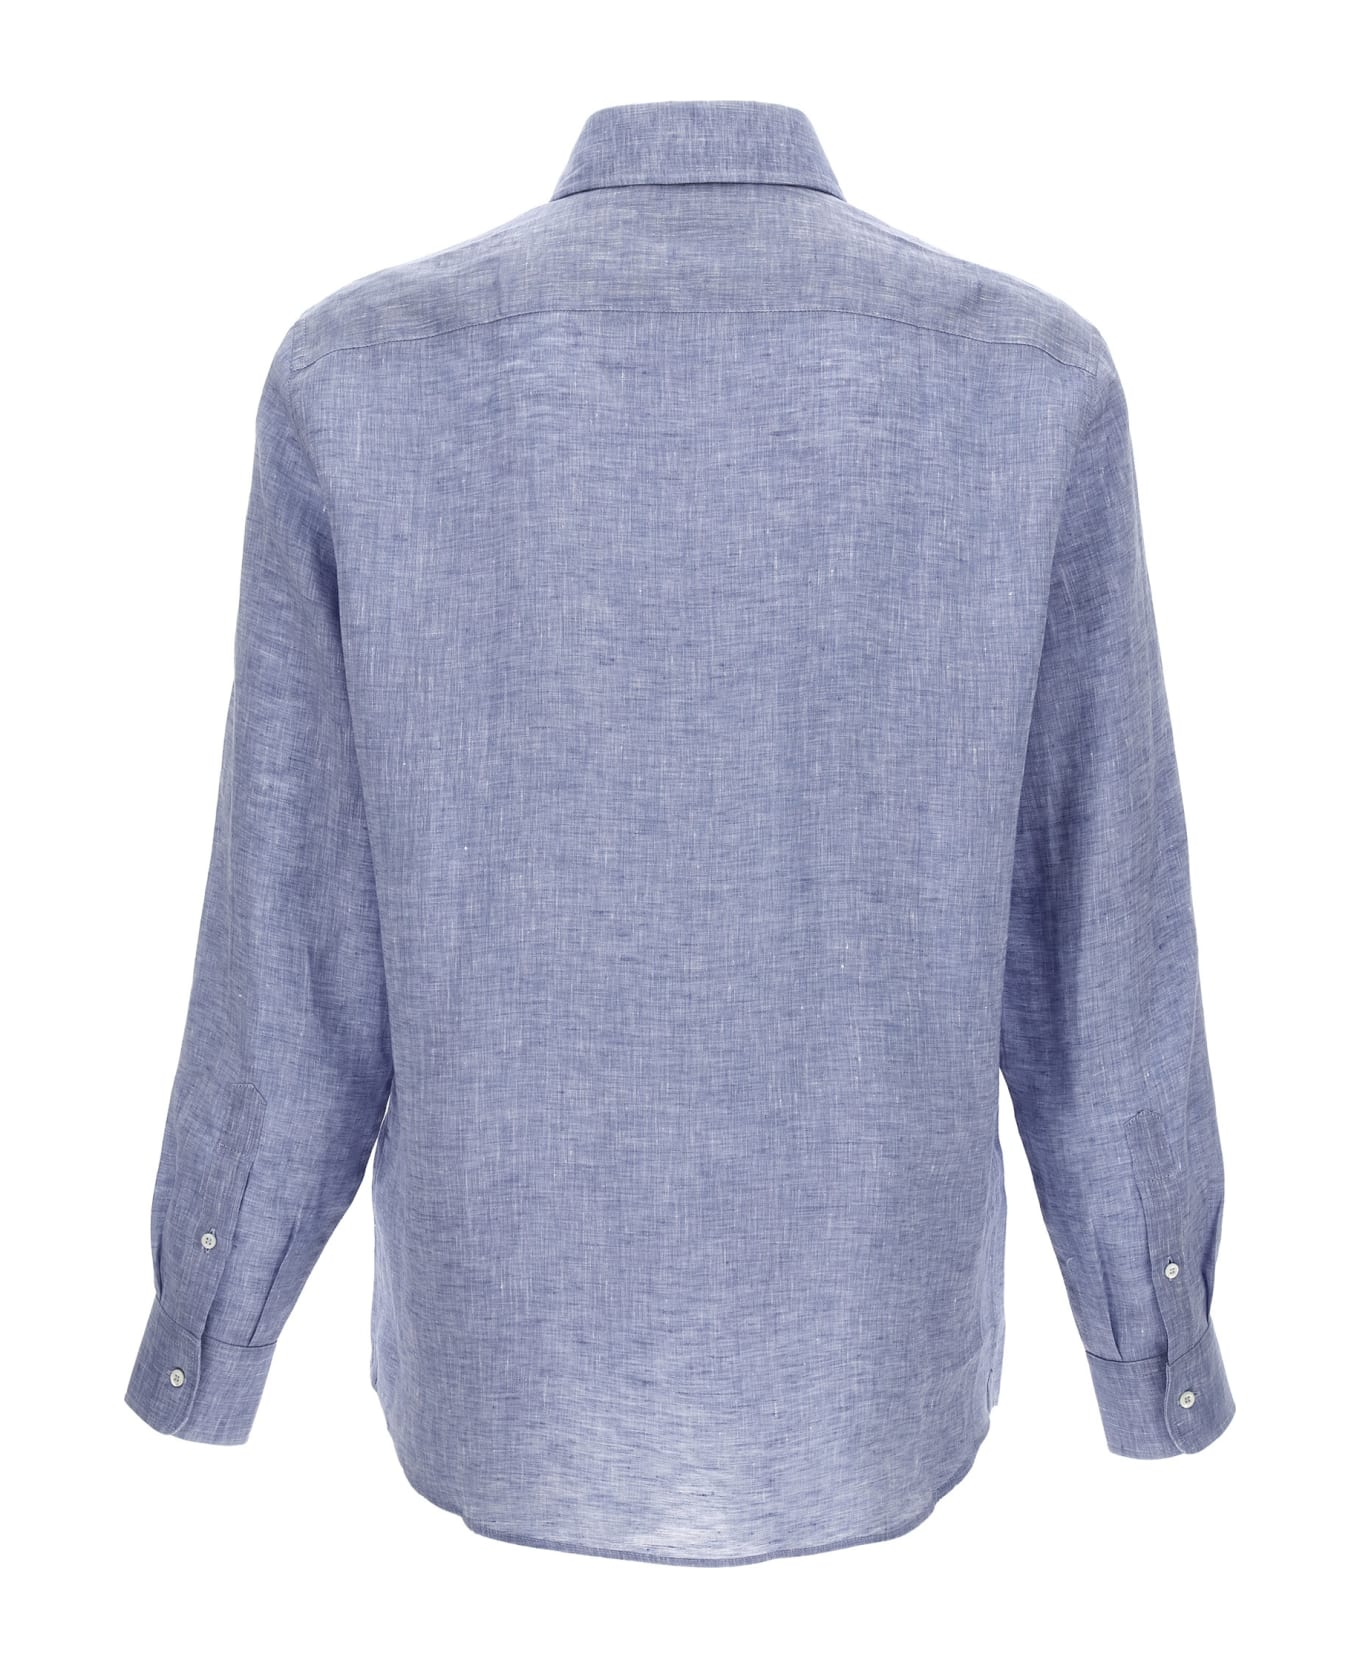 Brunello Cucinelli Linen Shirt - Light Blue